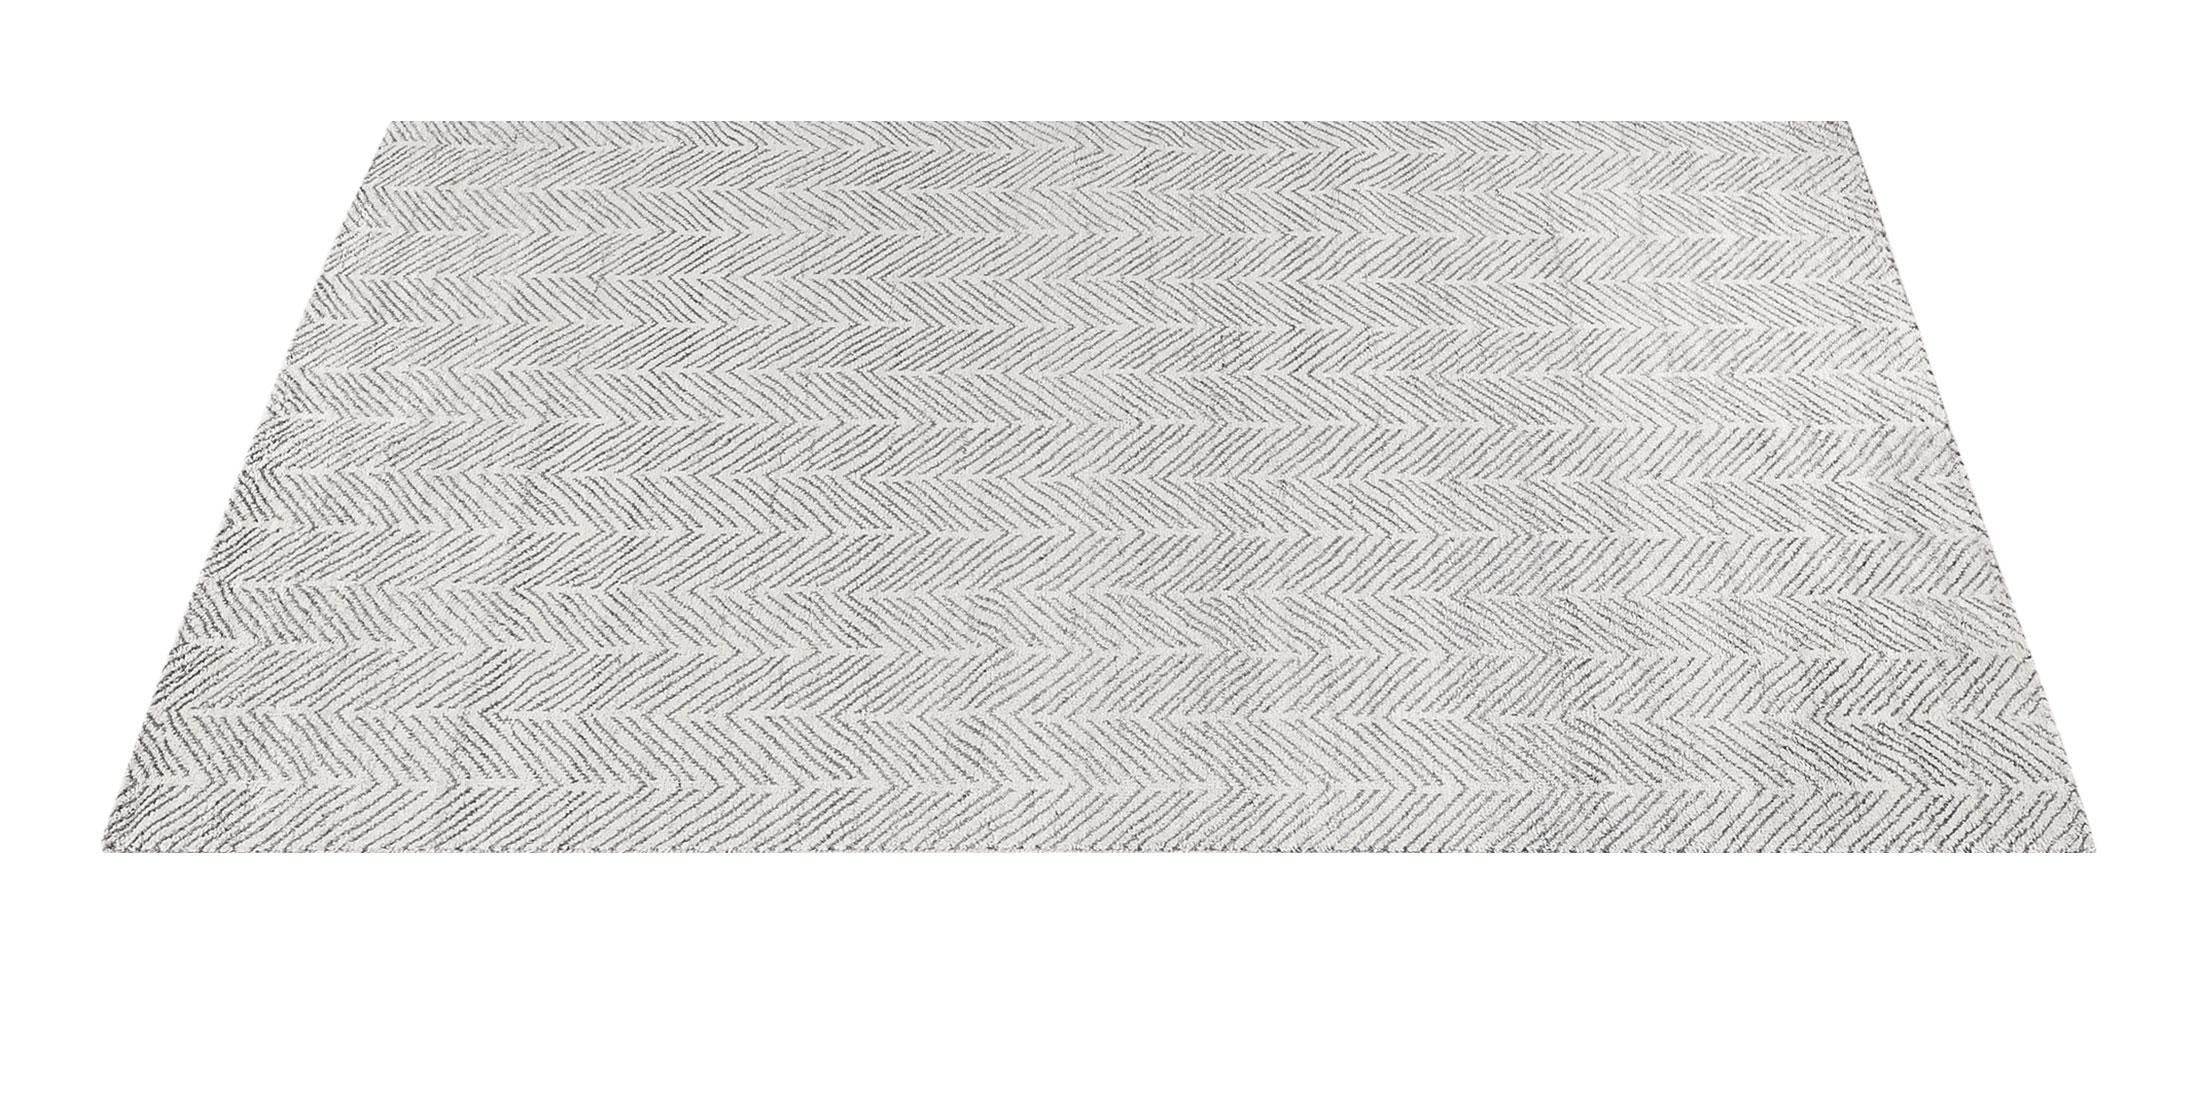 For Sale: White (White/Silver) Ben Soleimani Alia Rug– Hand-woven Chevron Wool + Viscose Black/Gray 12'x15' 2